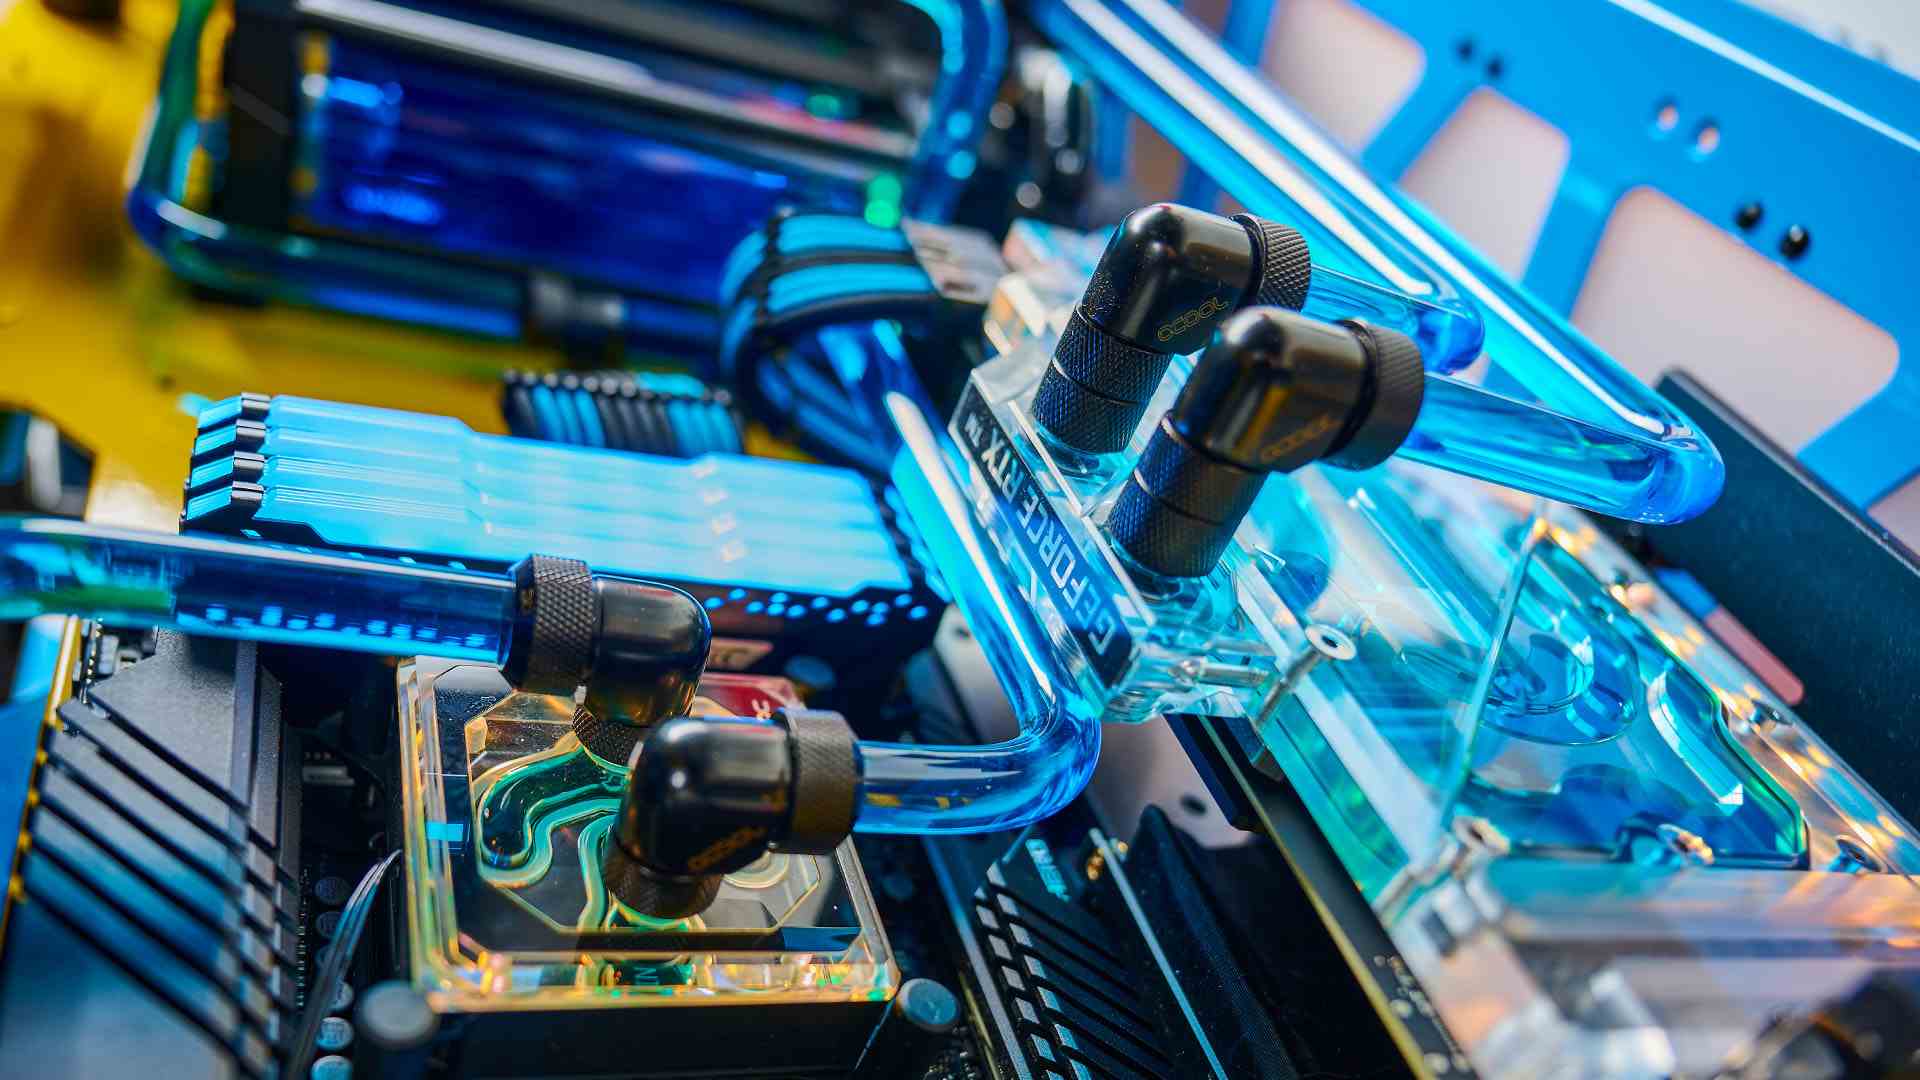 Intel Oyuncu Günleri oyun bilgisayarının içindeki su soğutma sistemi